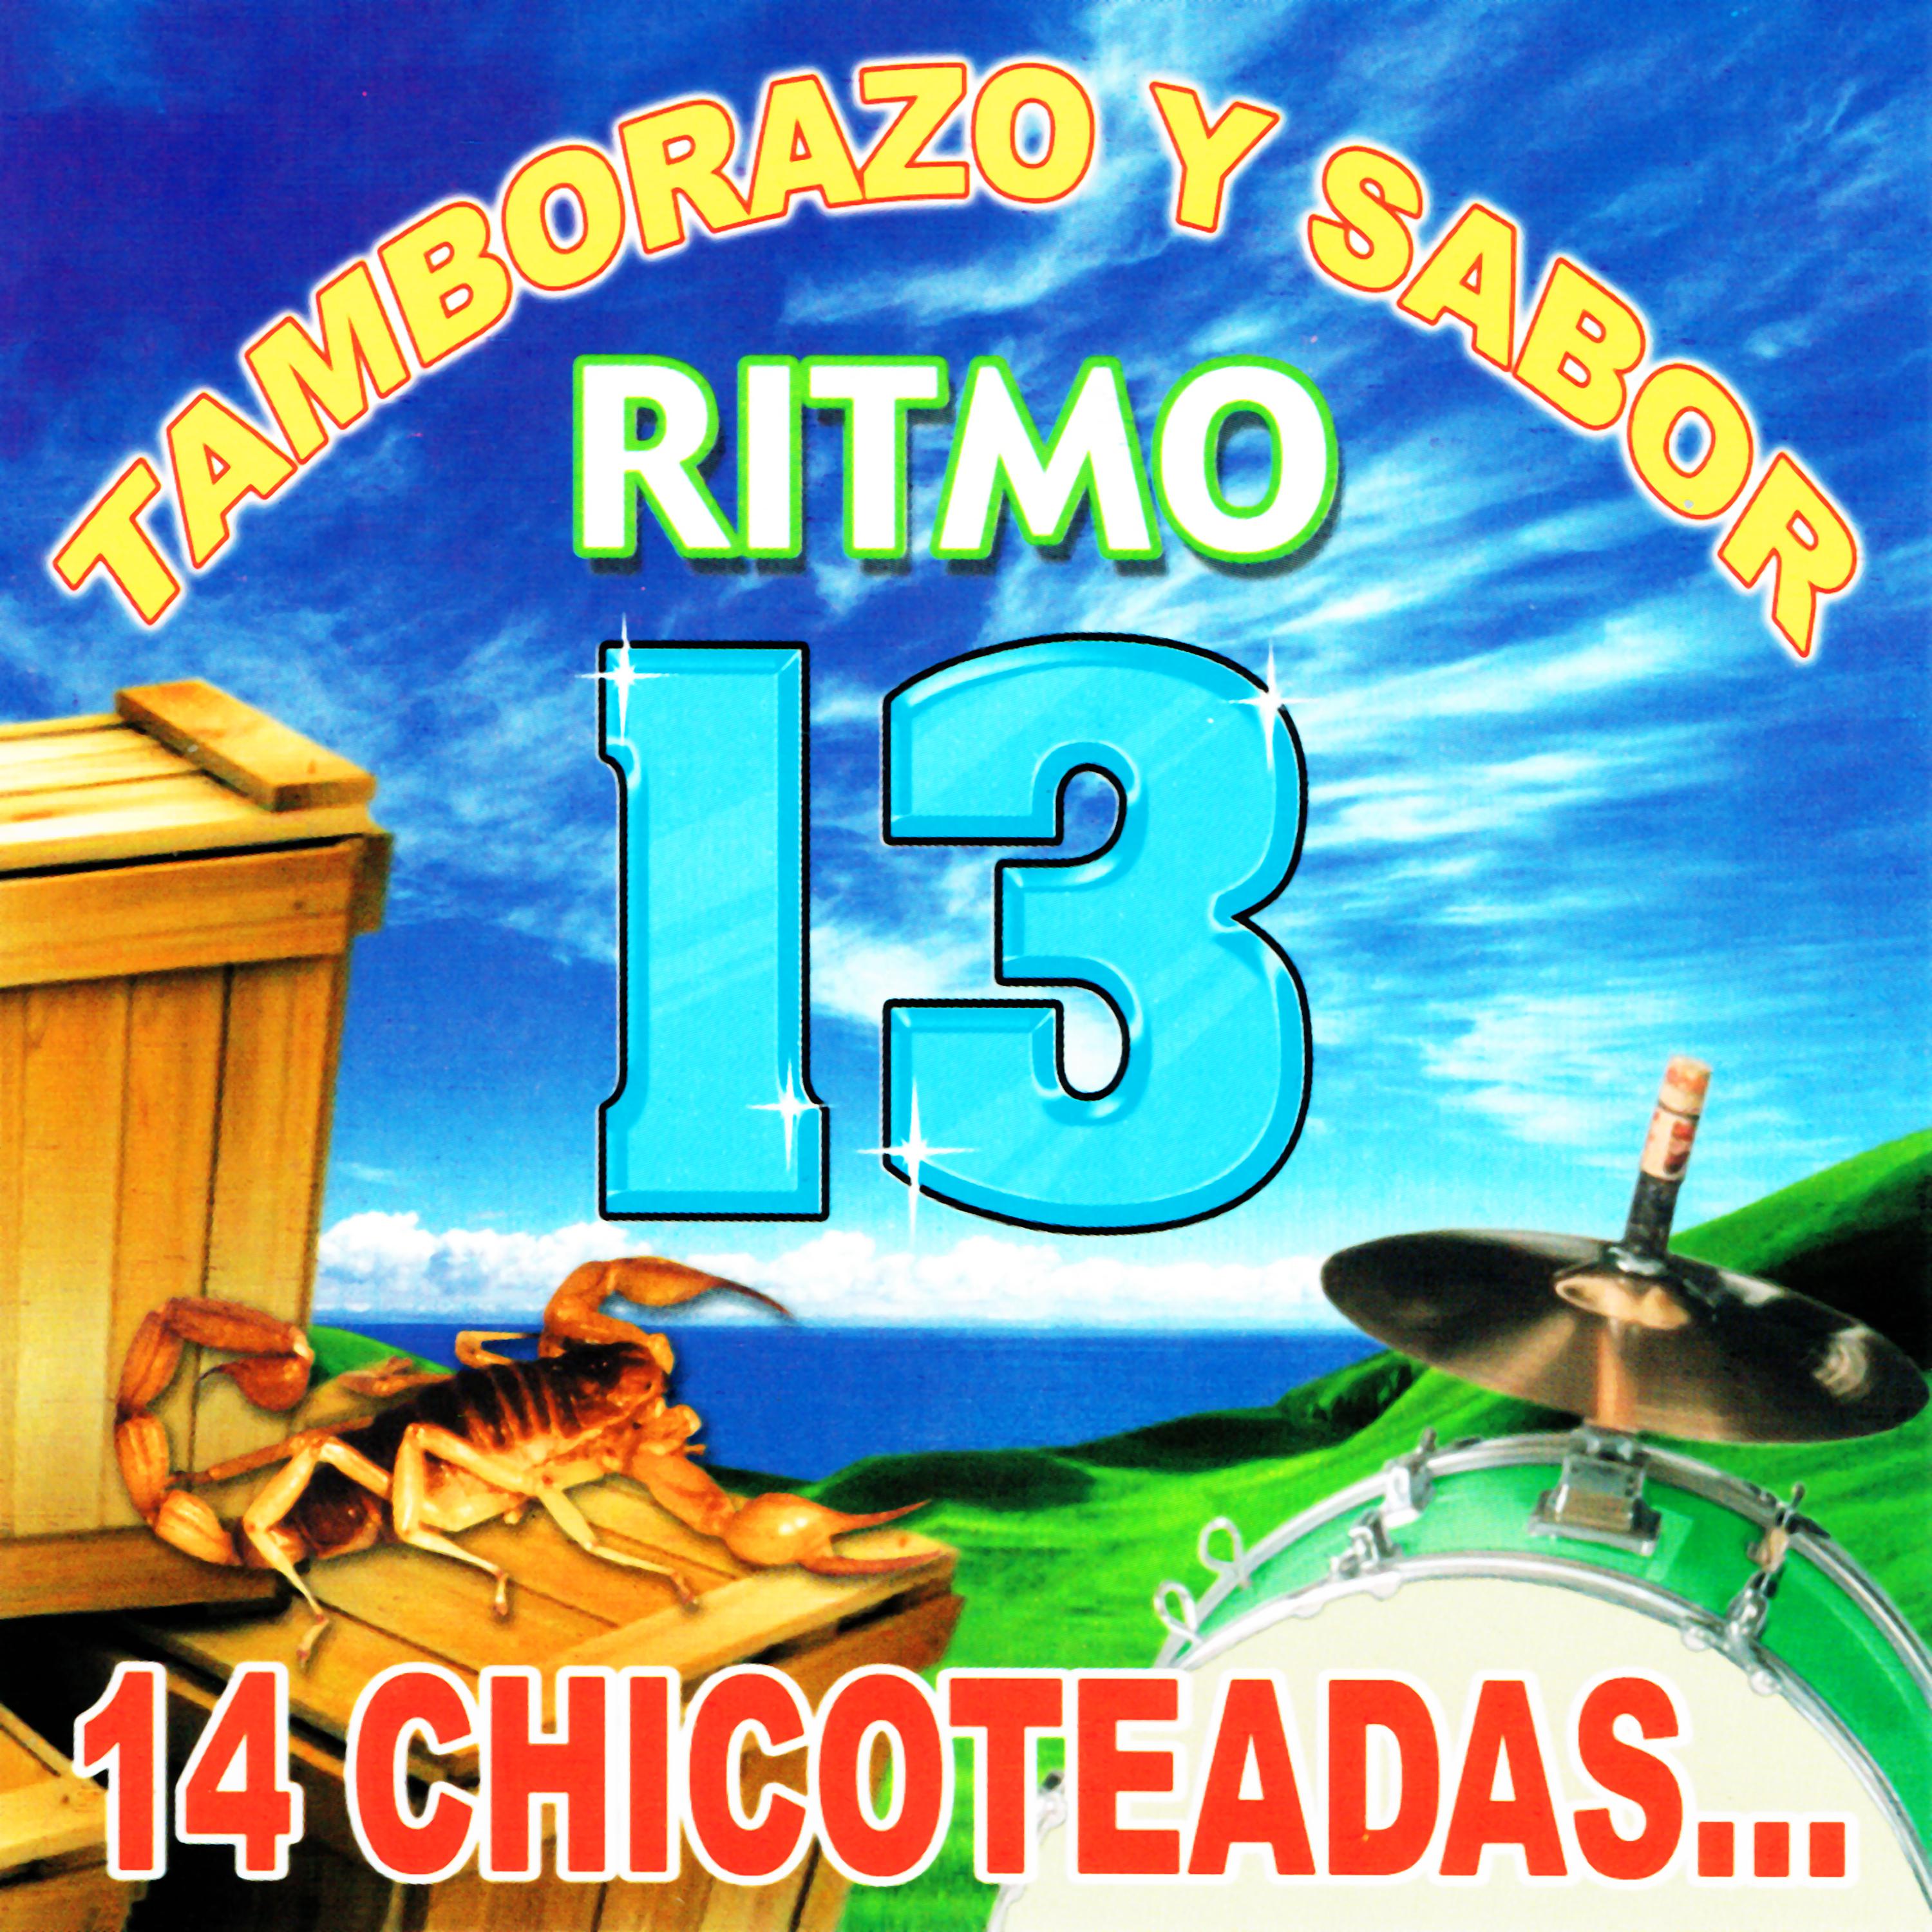 Tamborazo y Sabor Ritmo 13 "14 Chicoteadas"